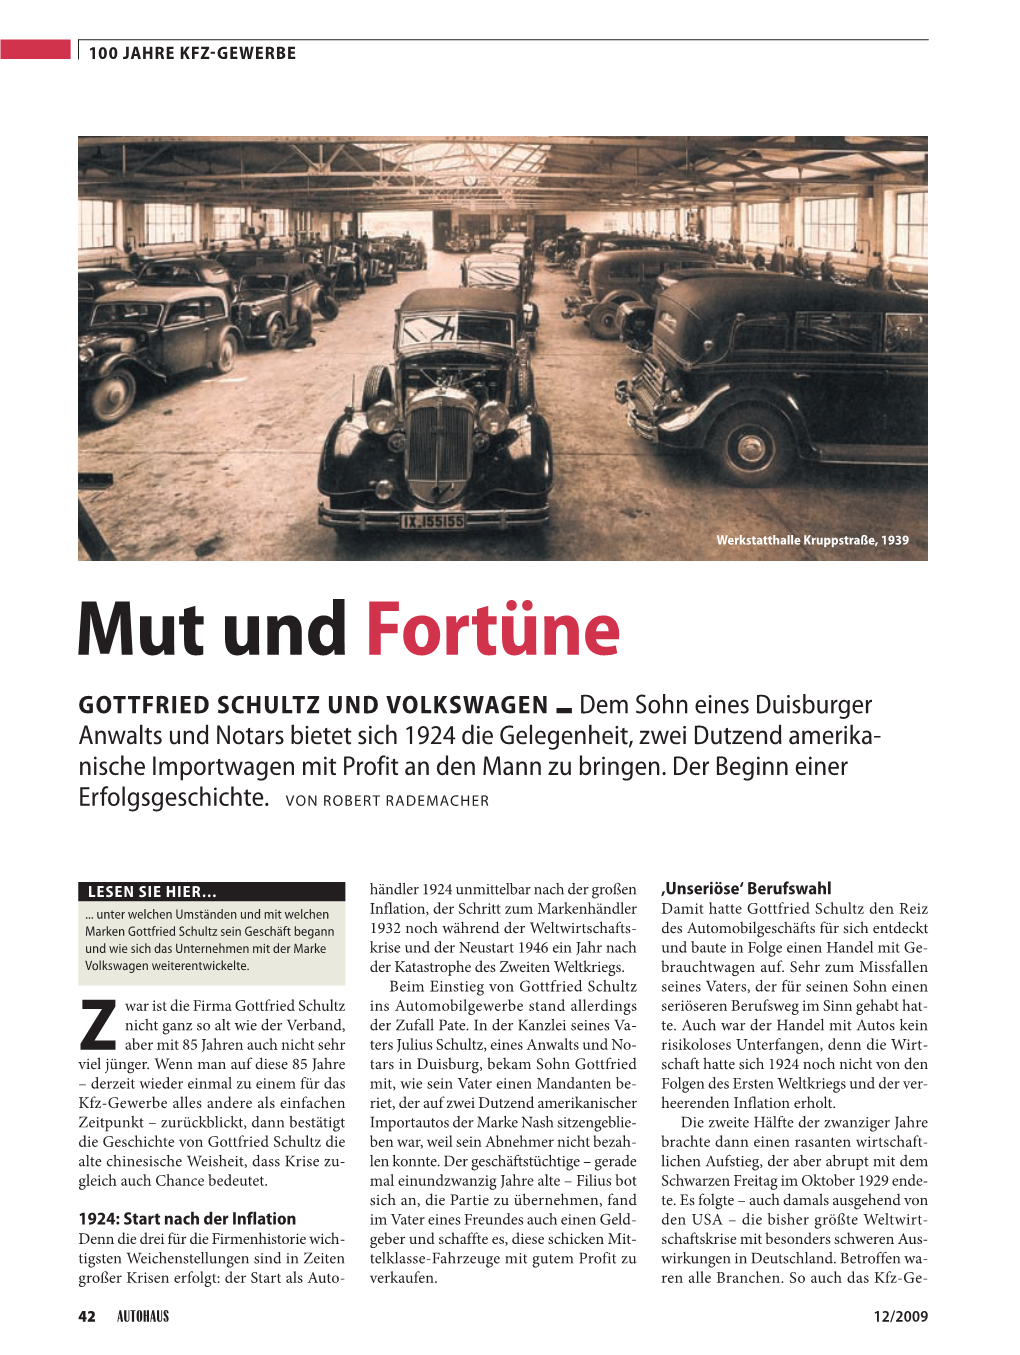 Mut Und Fortüne Gottfried Schultz Und Volkswagen